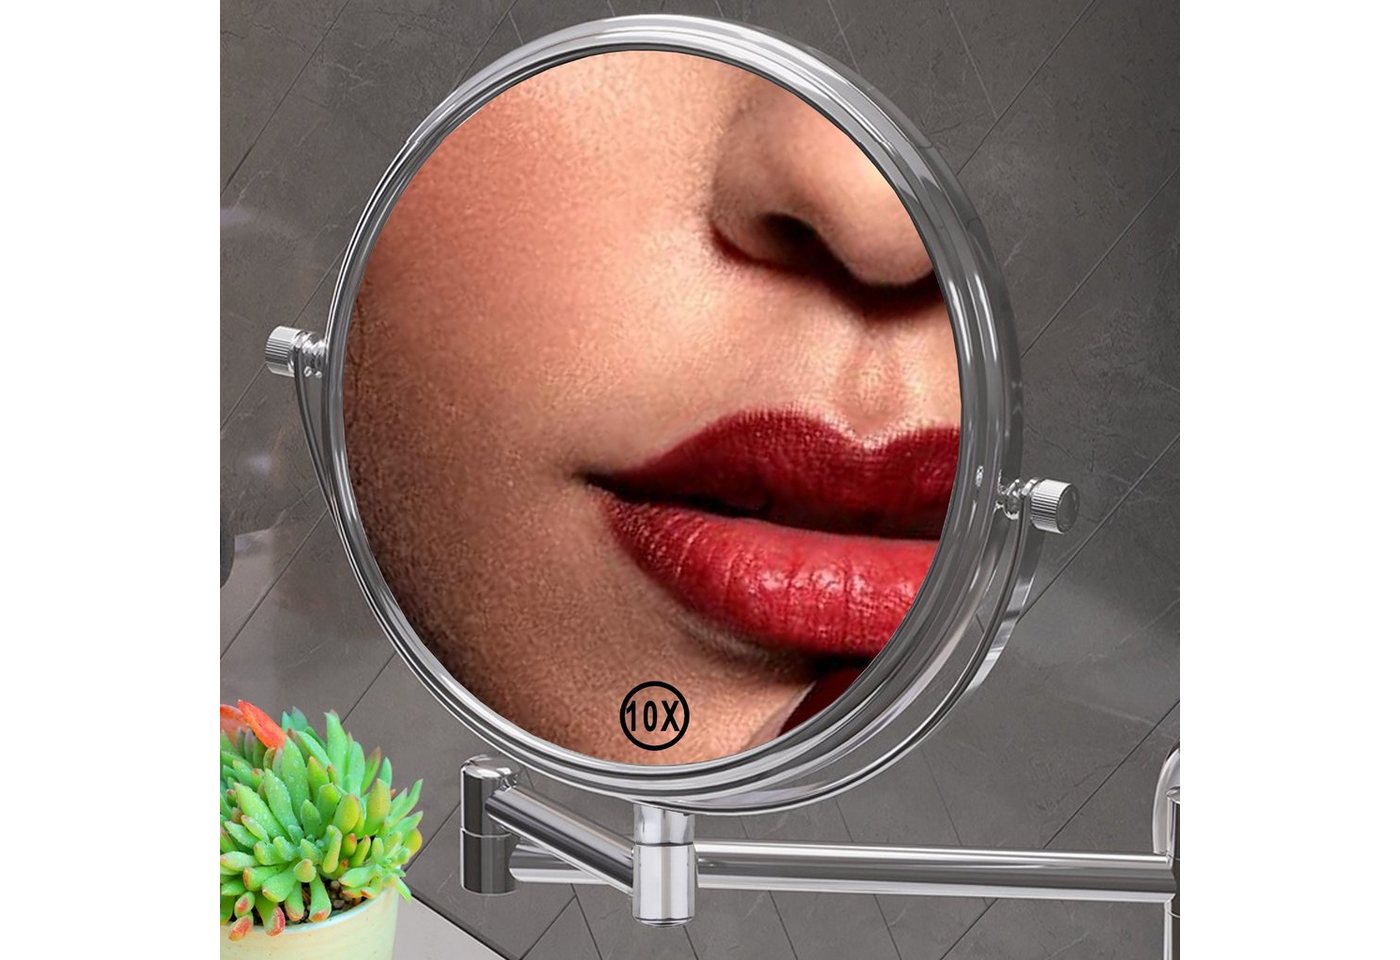 Melko Kosmetikspiegel Schminkspiegel Kosmetikspiegel Wandspiegel 10-fach (Stück), 10-facher Vergrößerung von Melko